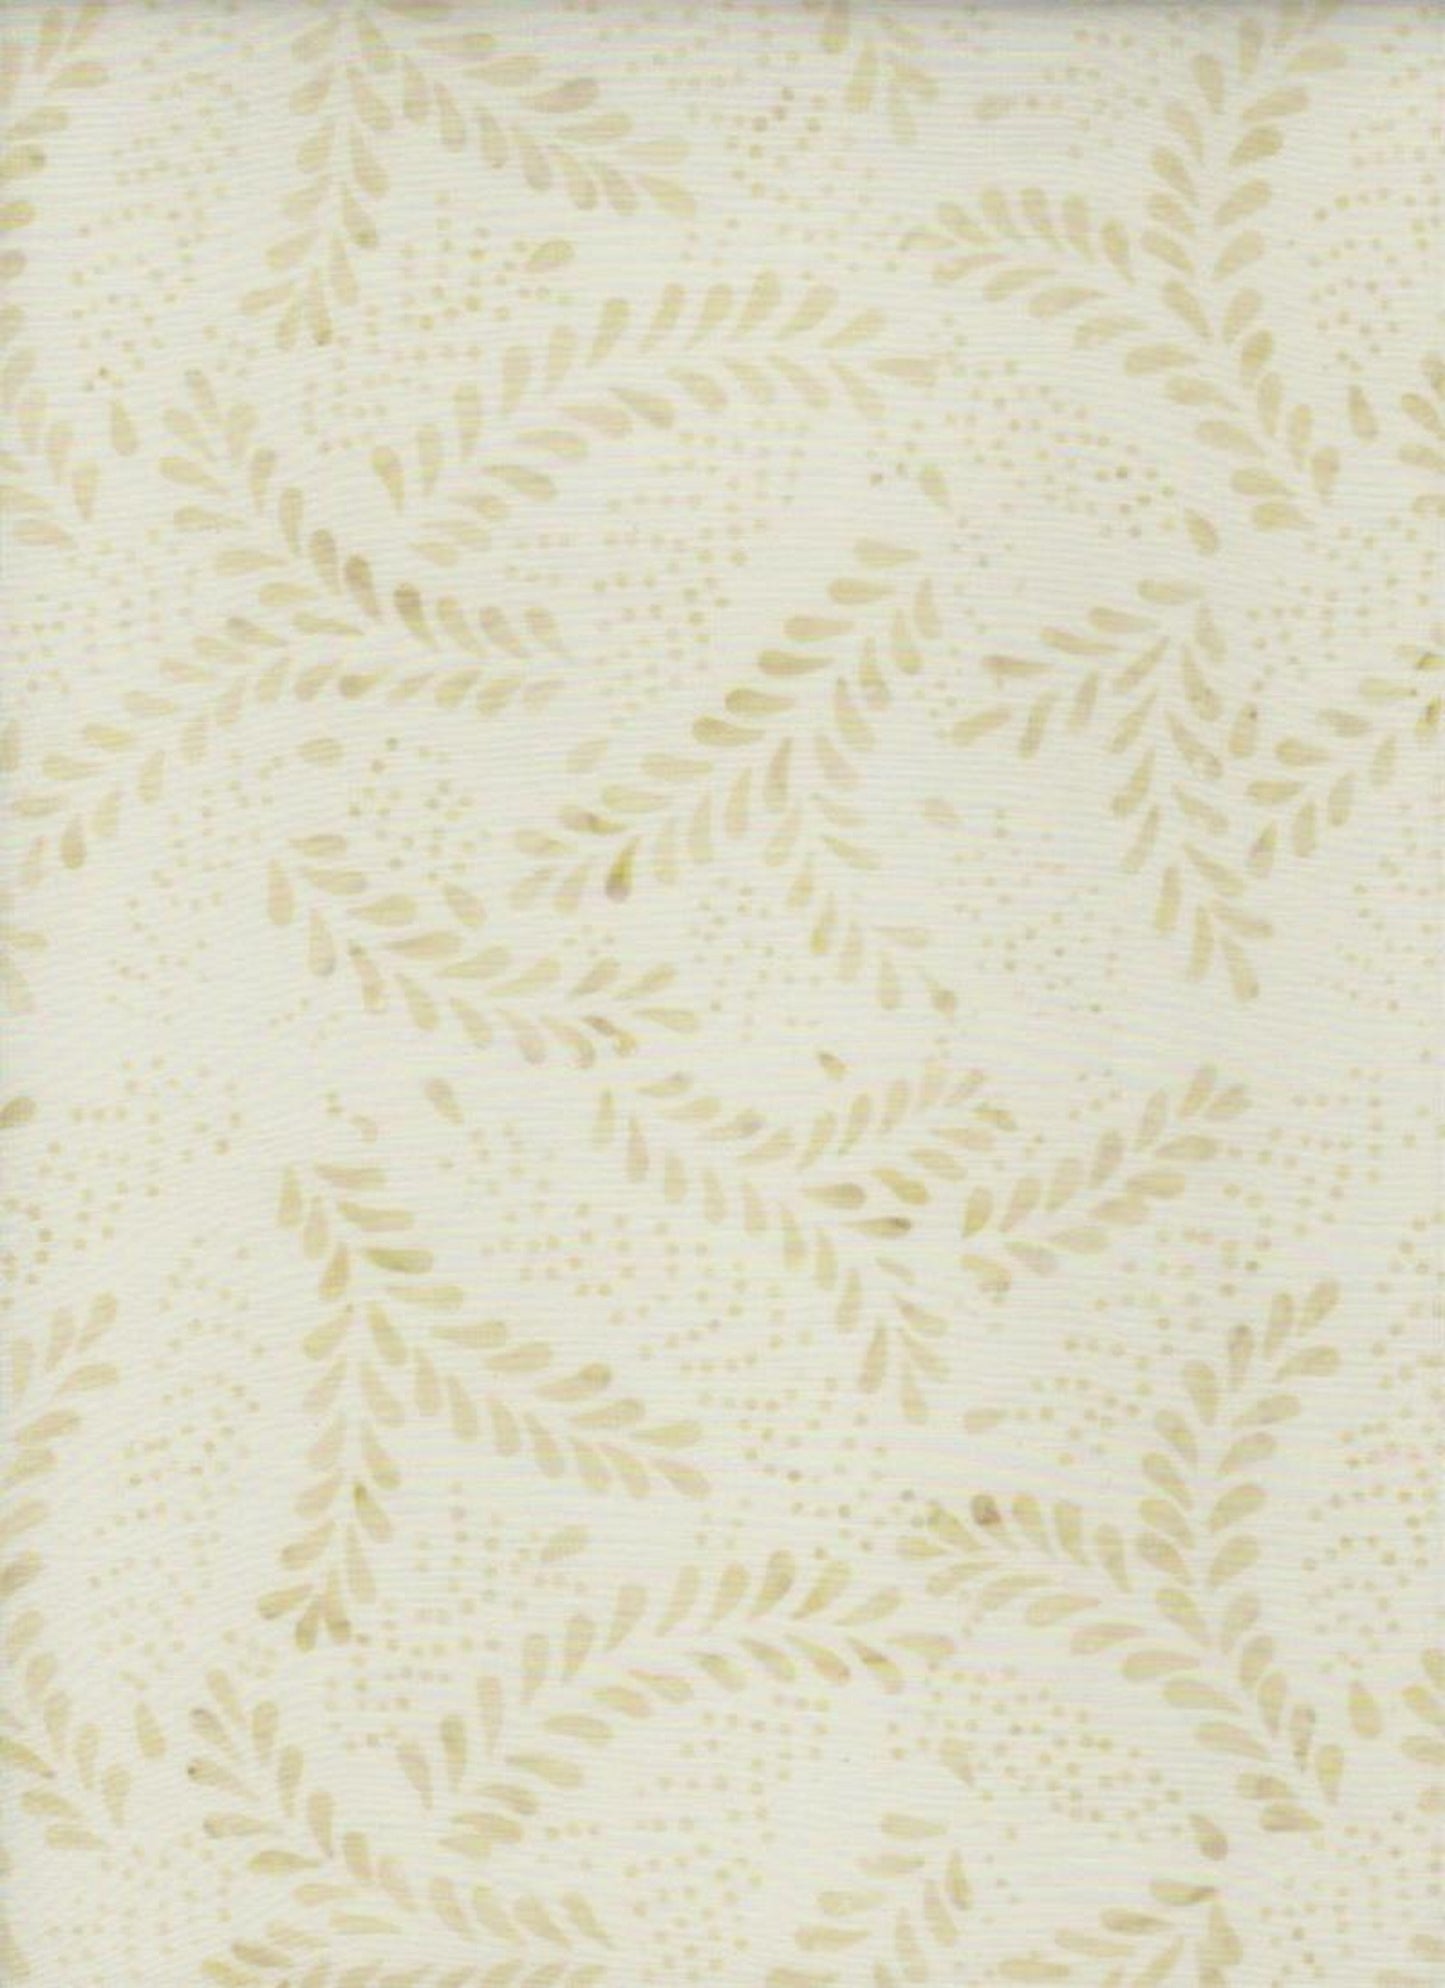 Wheat Chaffs on Cream B/G-#4232-Batik Textiles-BTY